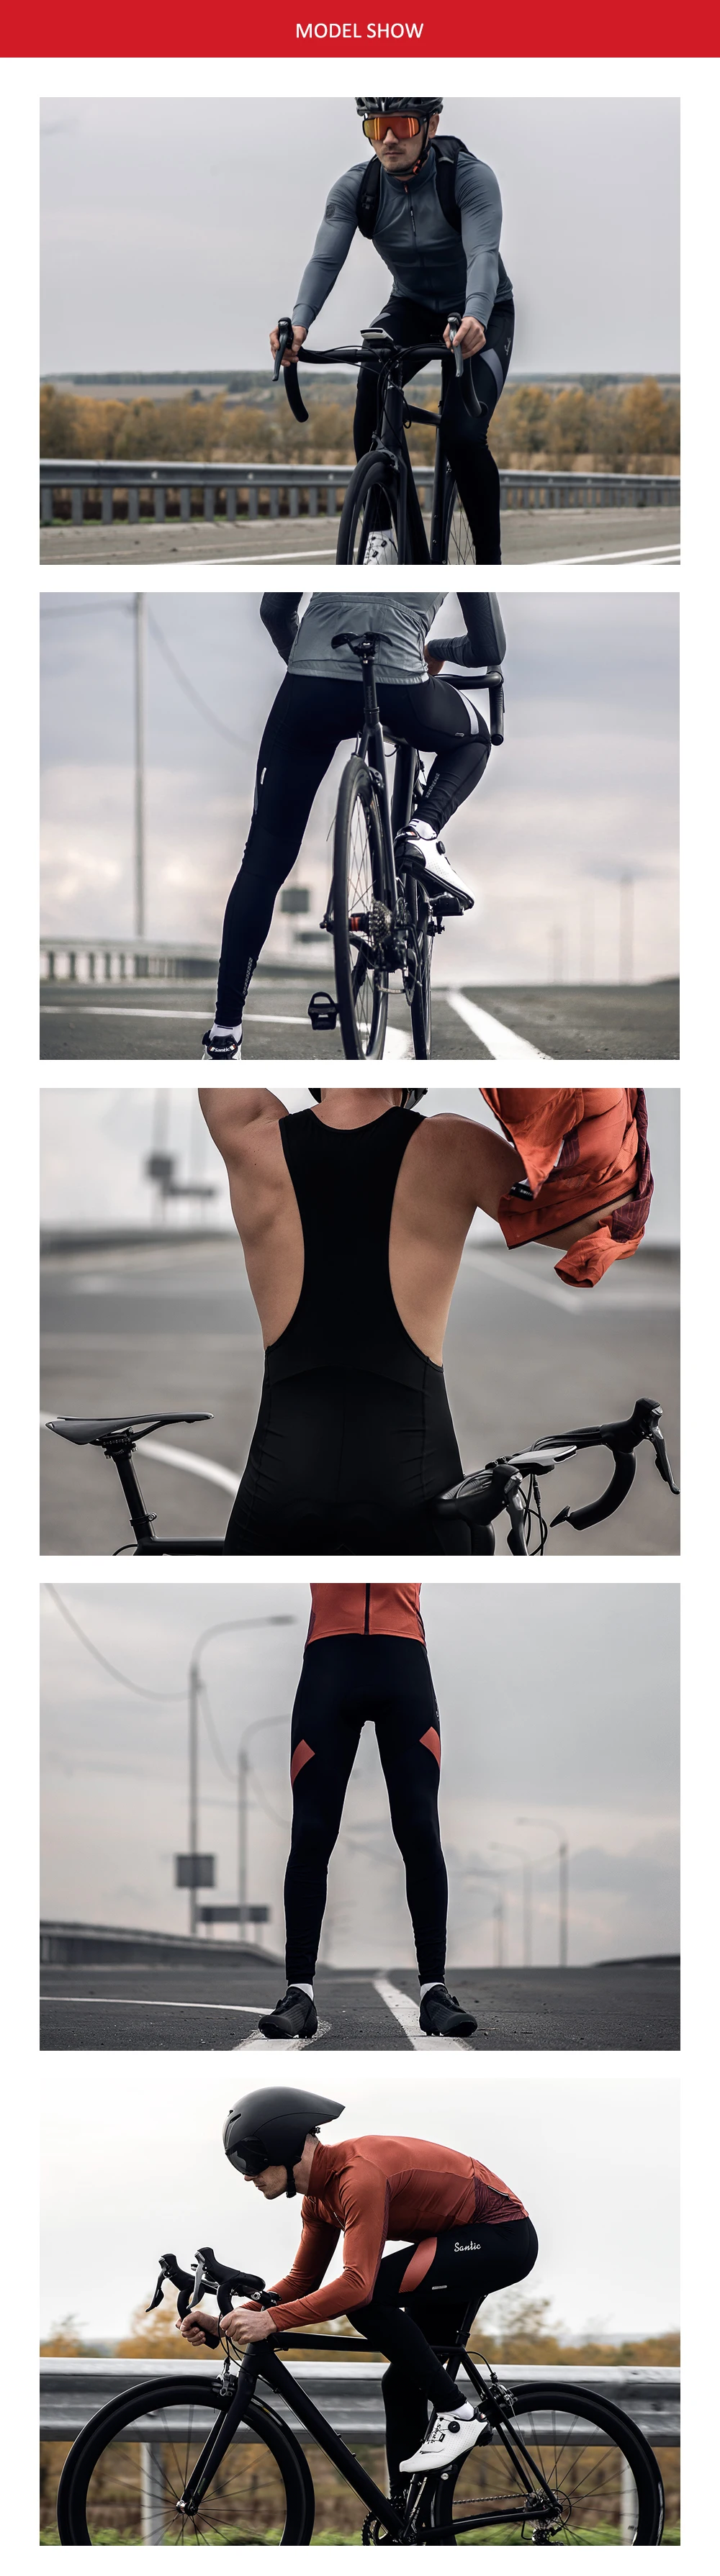 Santic мужские велосипедные нагрудники, трико, штаны, 4D подкладка, подушка для горного велосипеда, велосипедный нагрудник, длинные штаны, весна-осень, Азиатский размер M9C04115